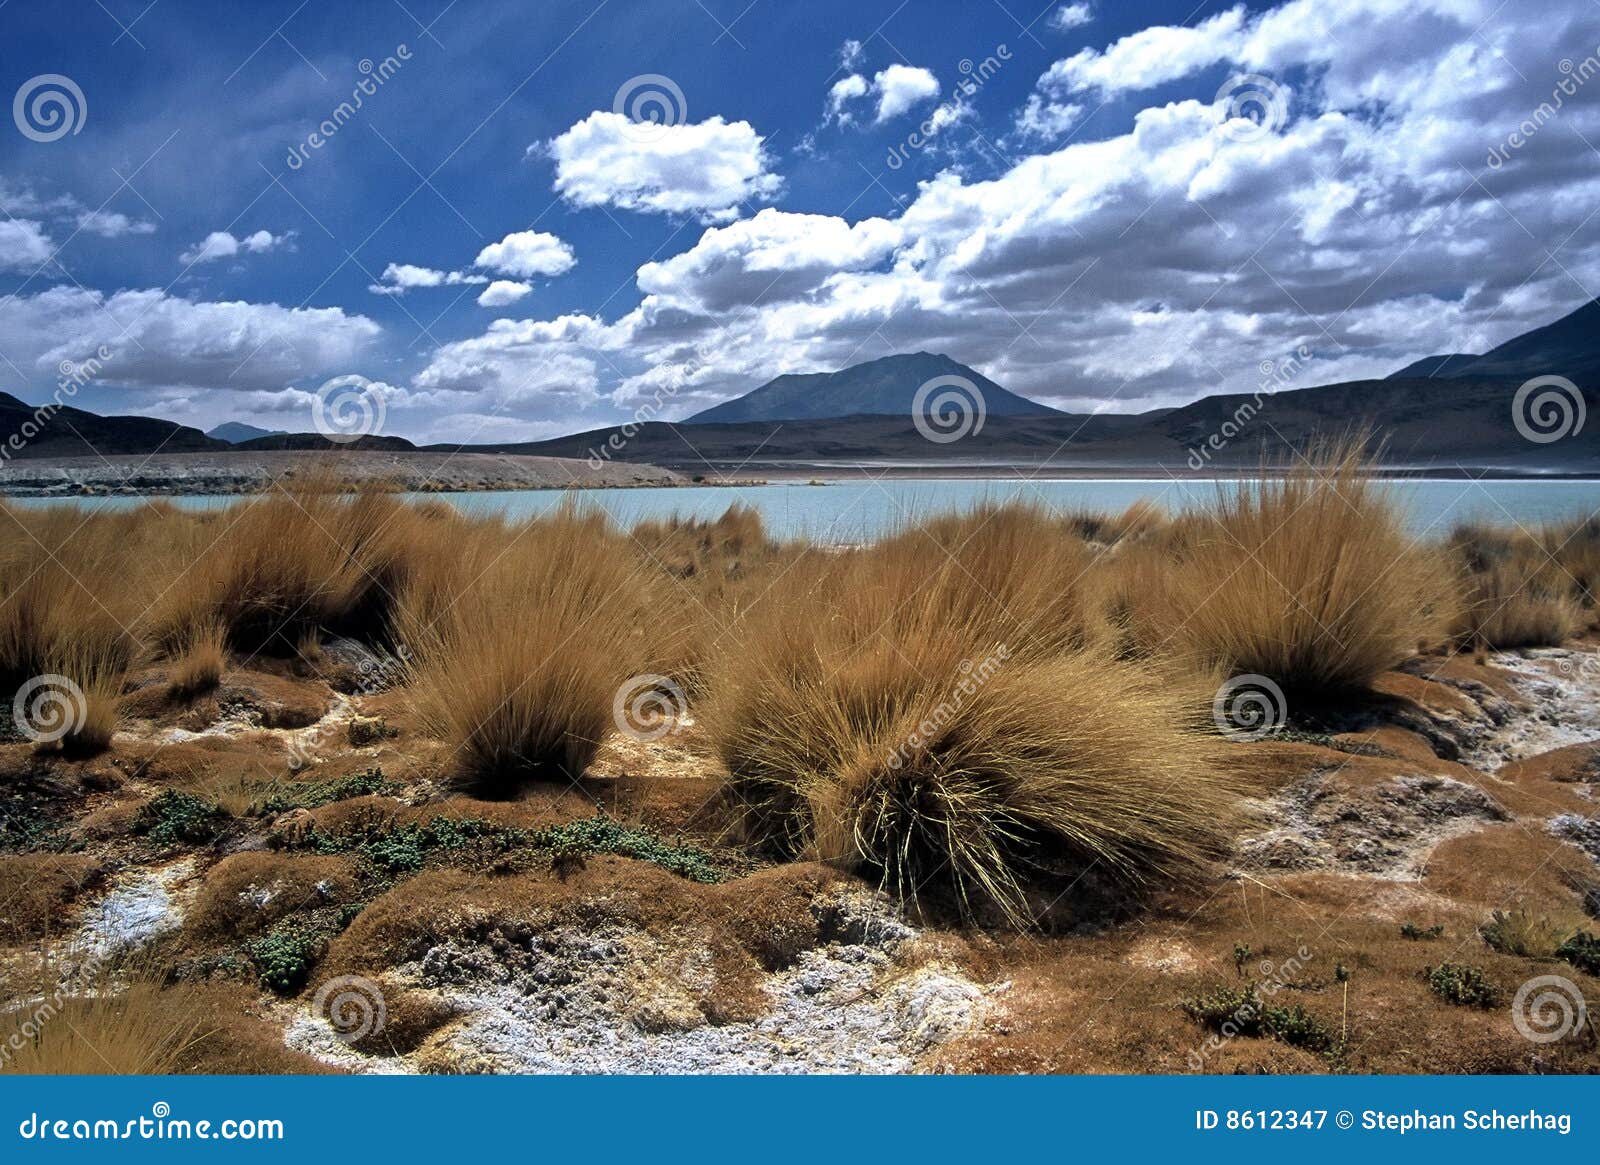 lagoon on altiplano in bolivia, bolivia